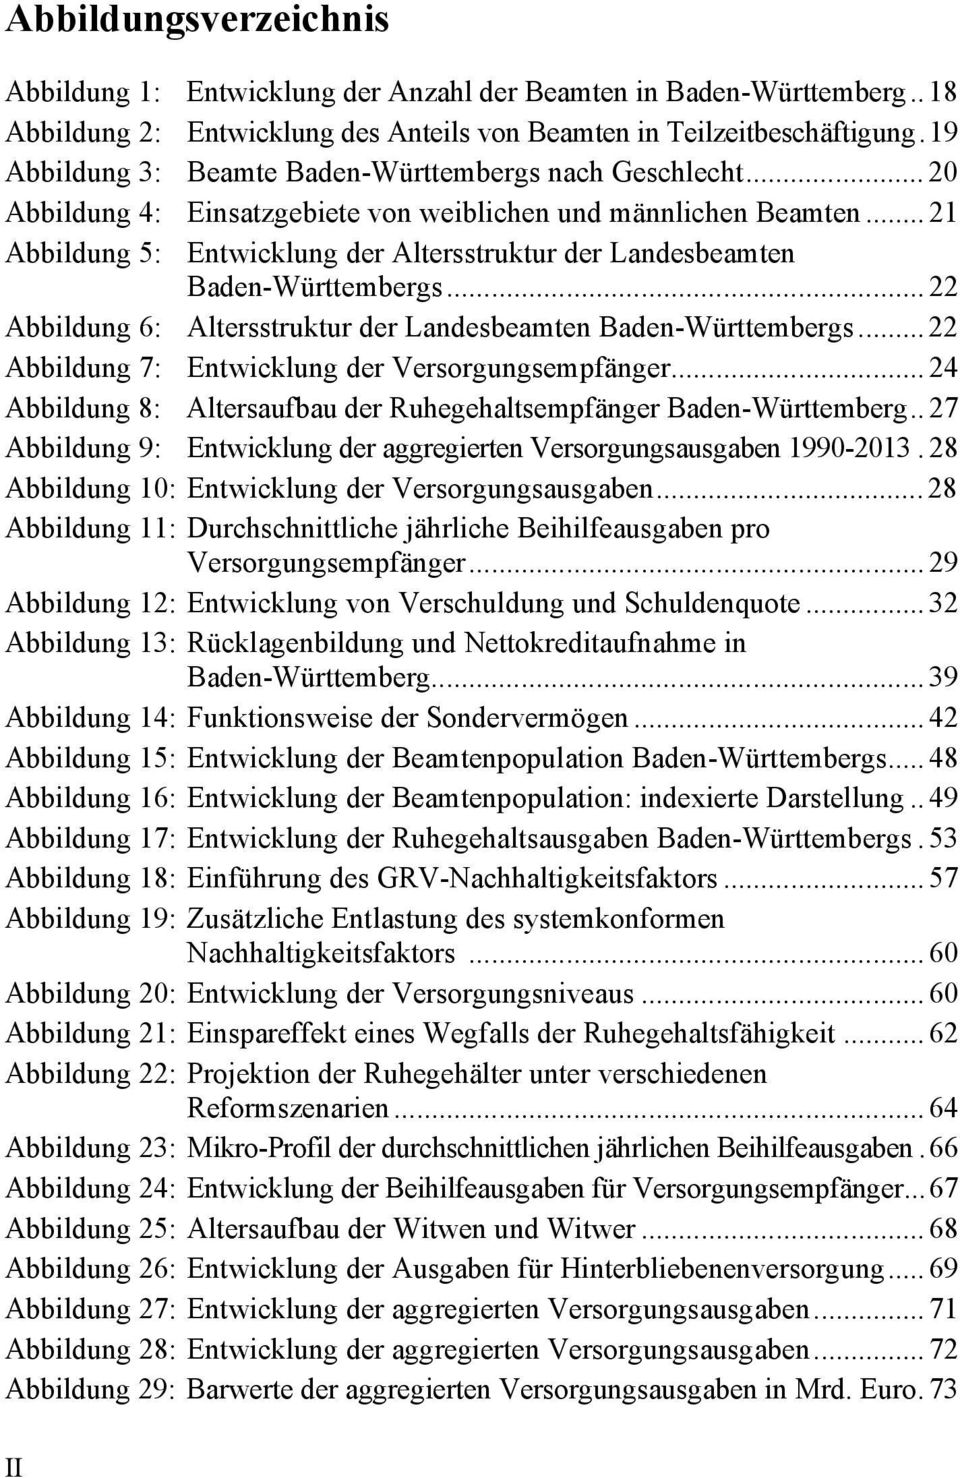 .. 21 Abbildung 5: Entwicklung der Altersstruktur der Landesbeamten Baden-Württembergs... 22 Abbildung 6: Altersstruktur der Landesbeamten Baden-Württembergs.